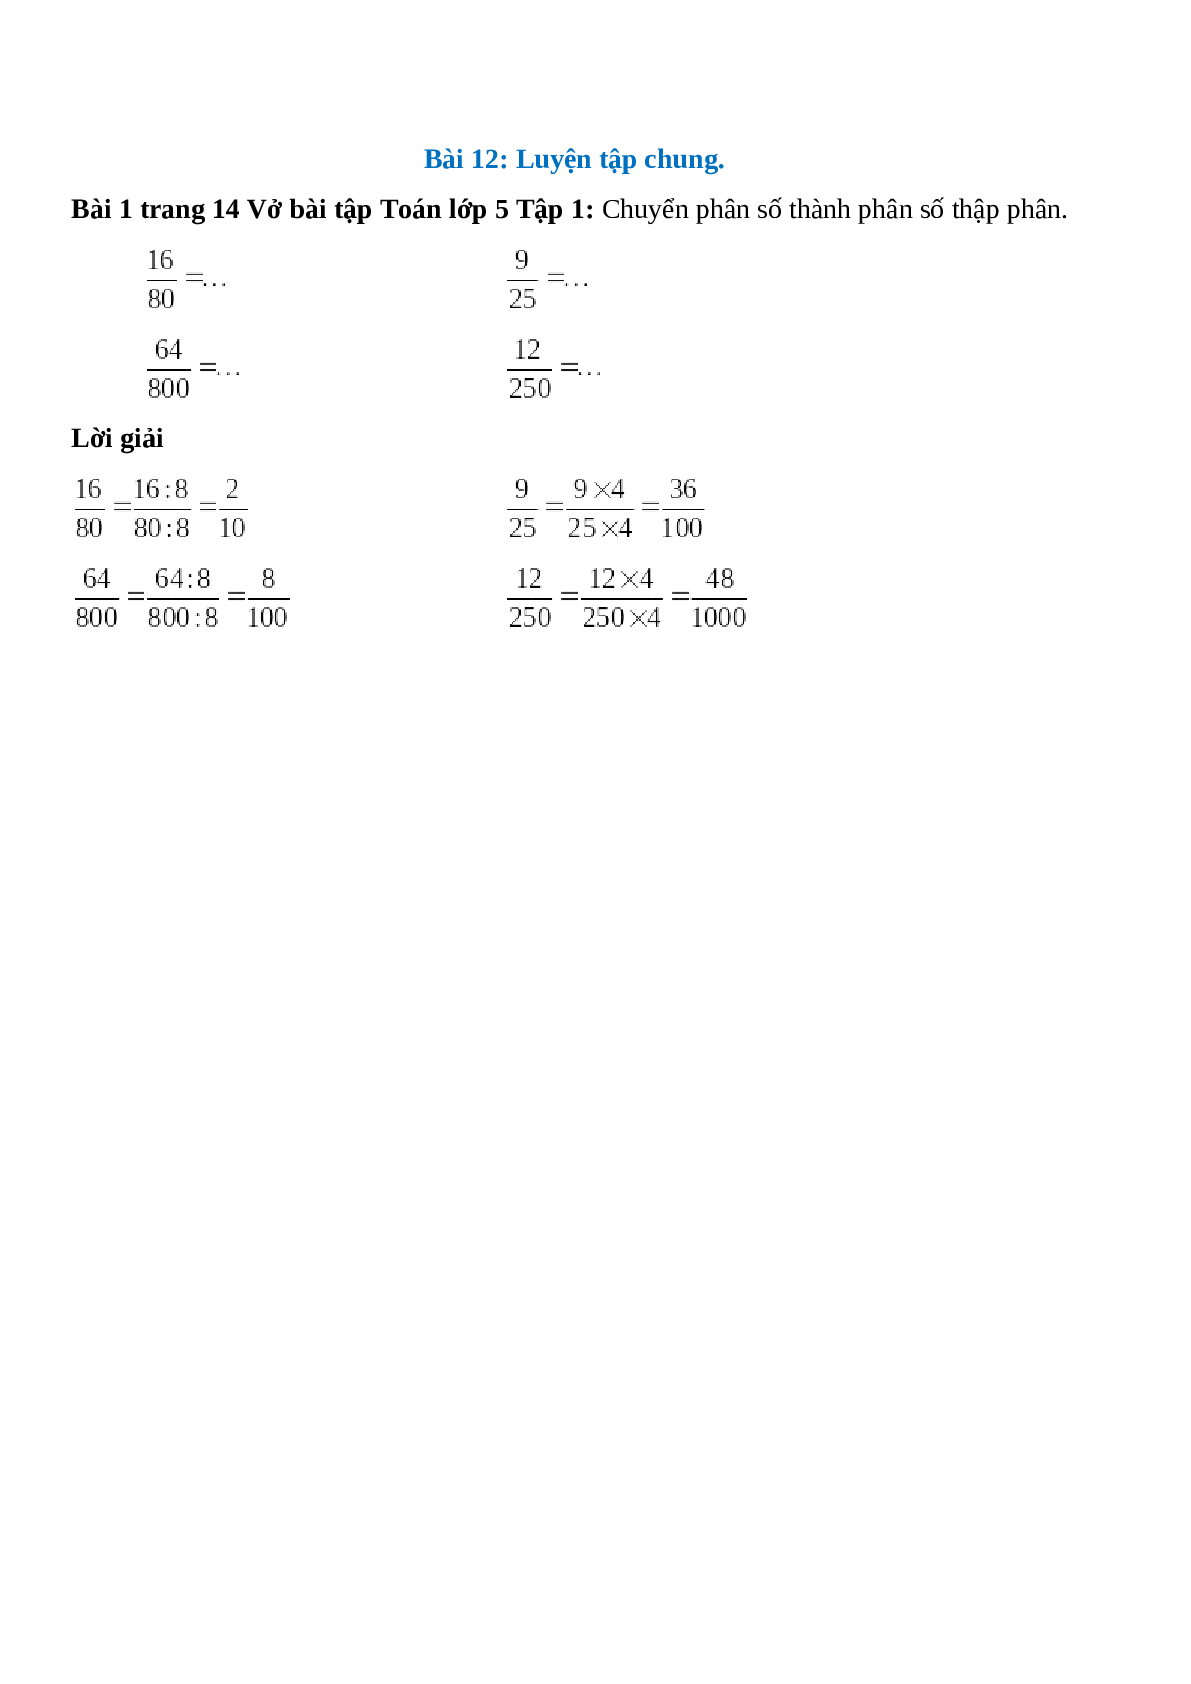 Chuyển phân số thành phân số thập phân: 16/80 = ... (trang 1)